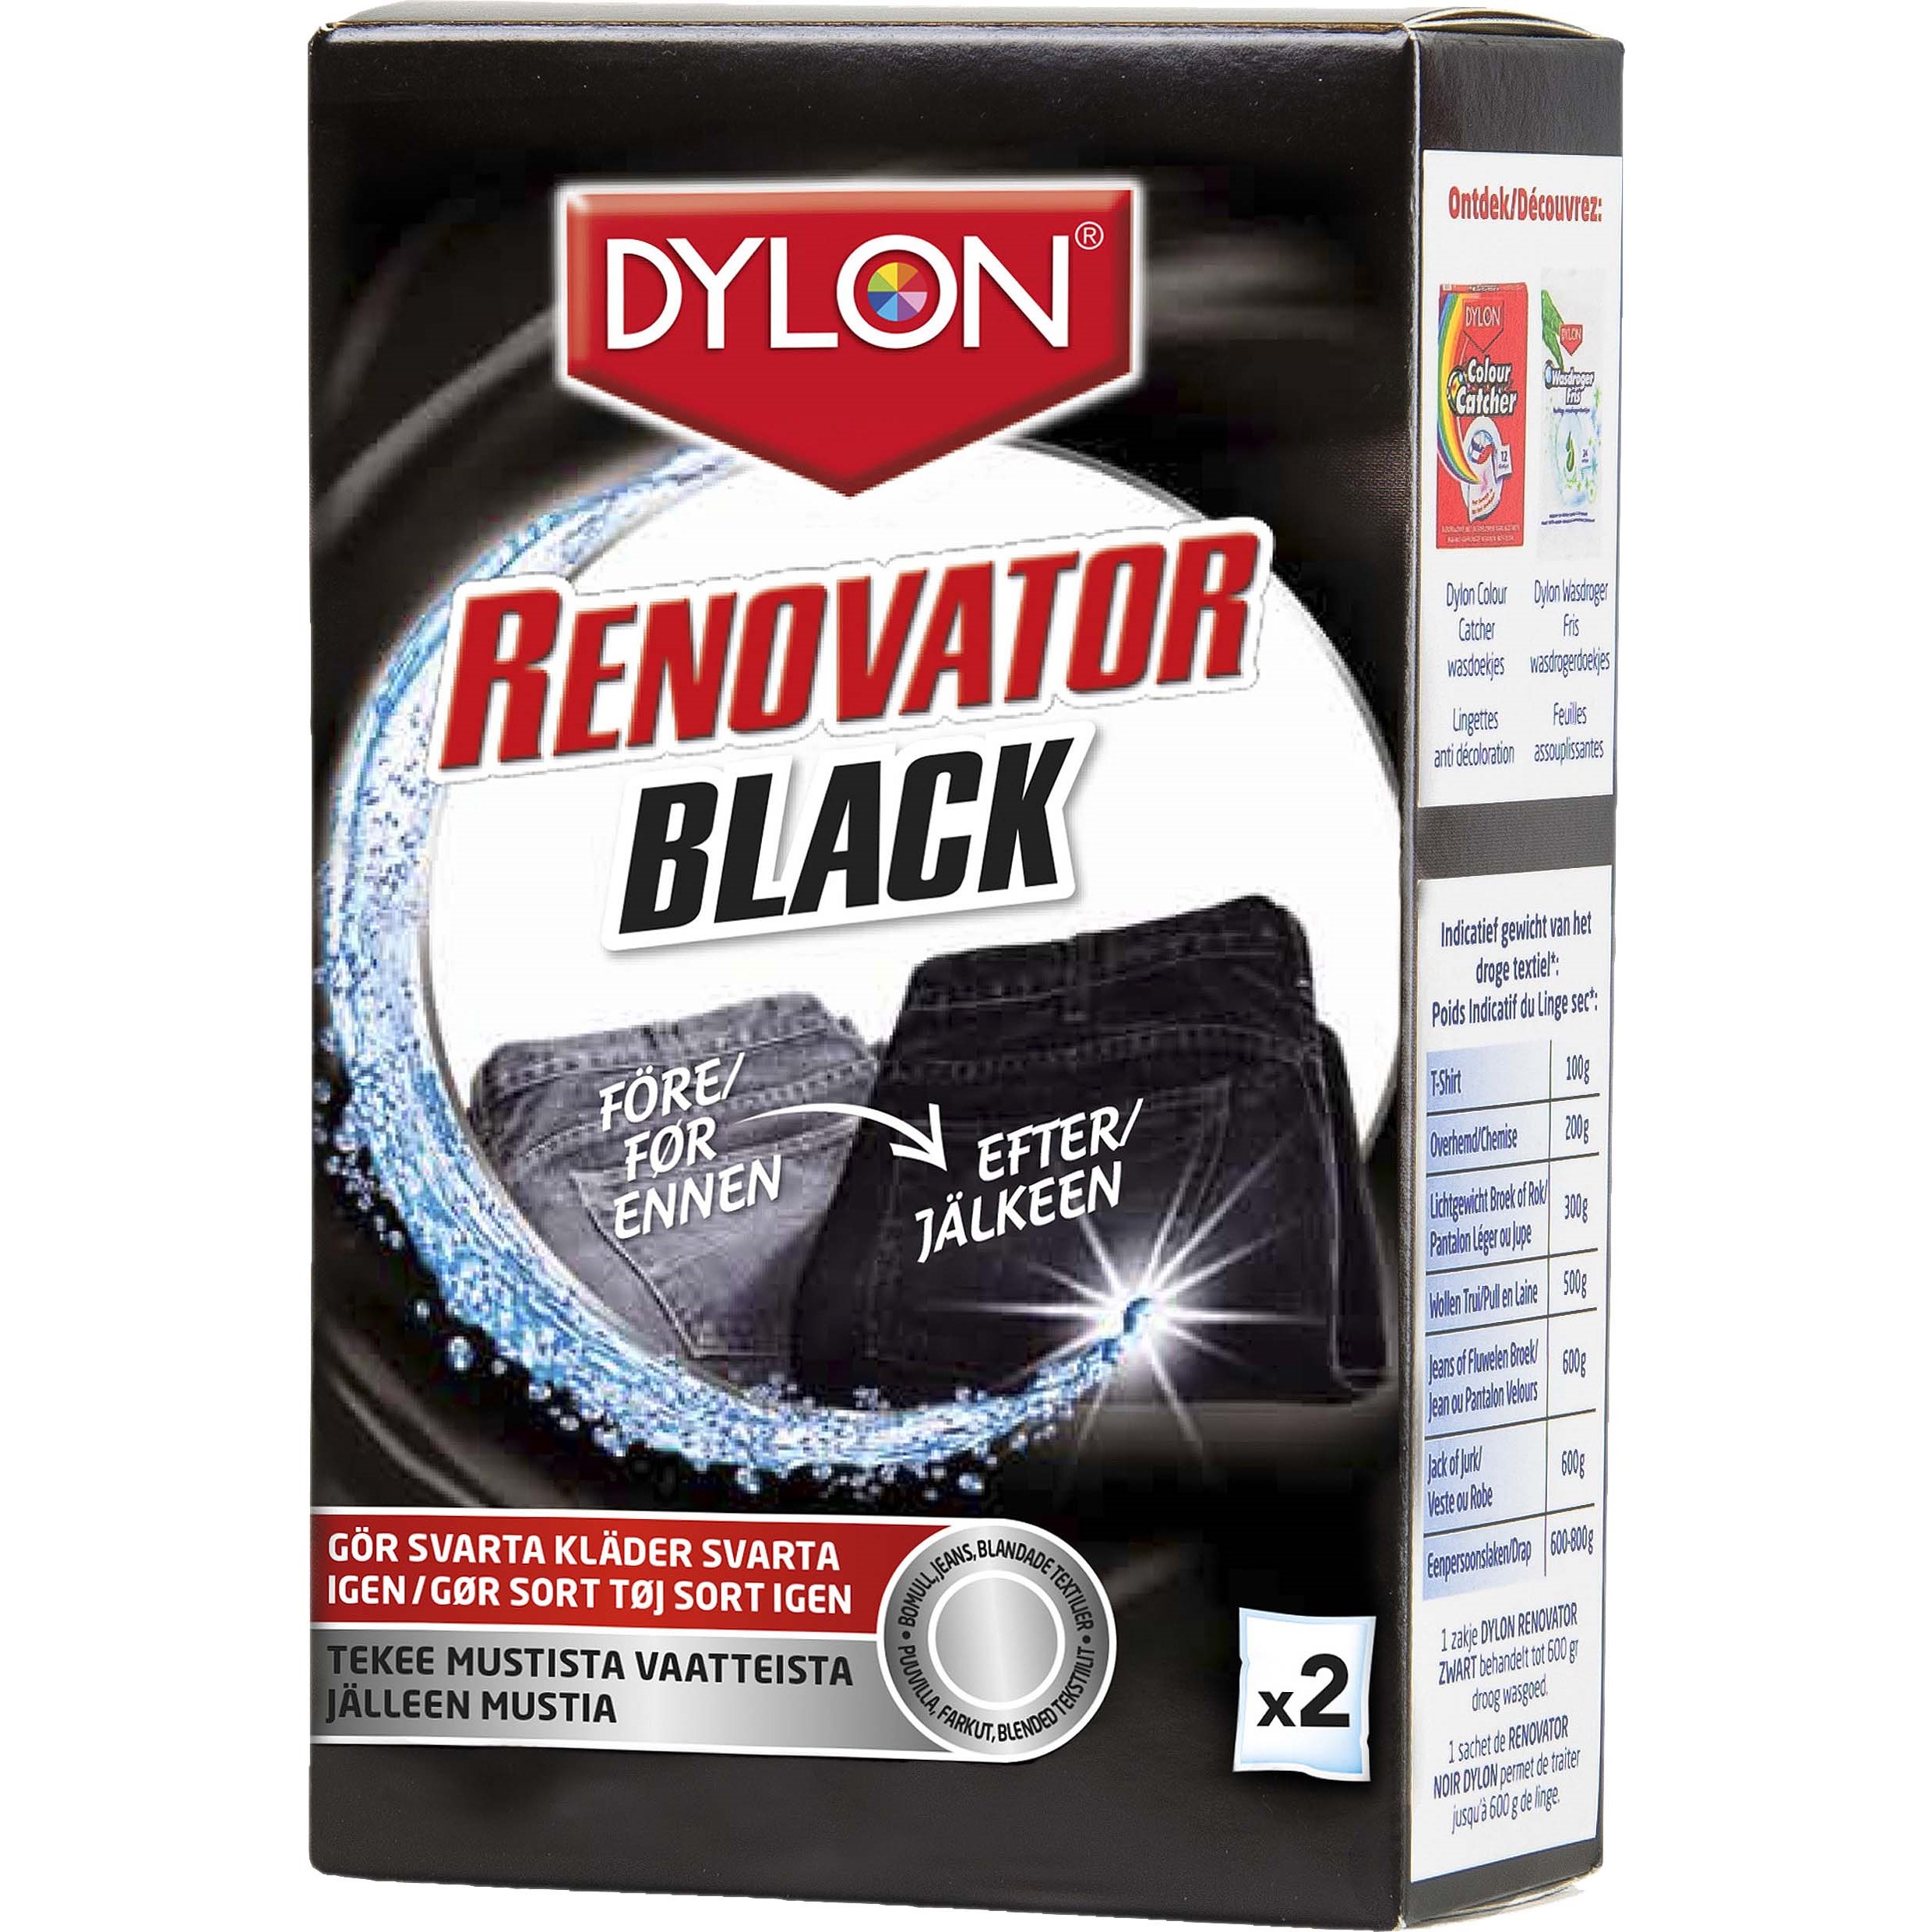 Läs mer om Dylon Black Renovator